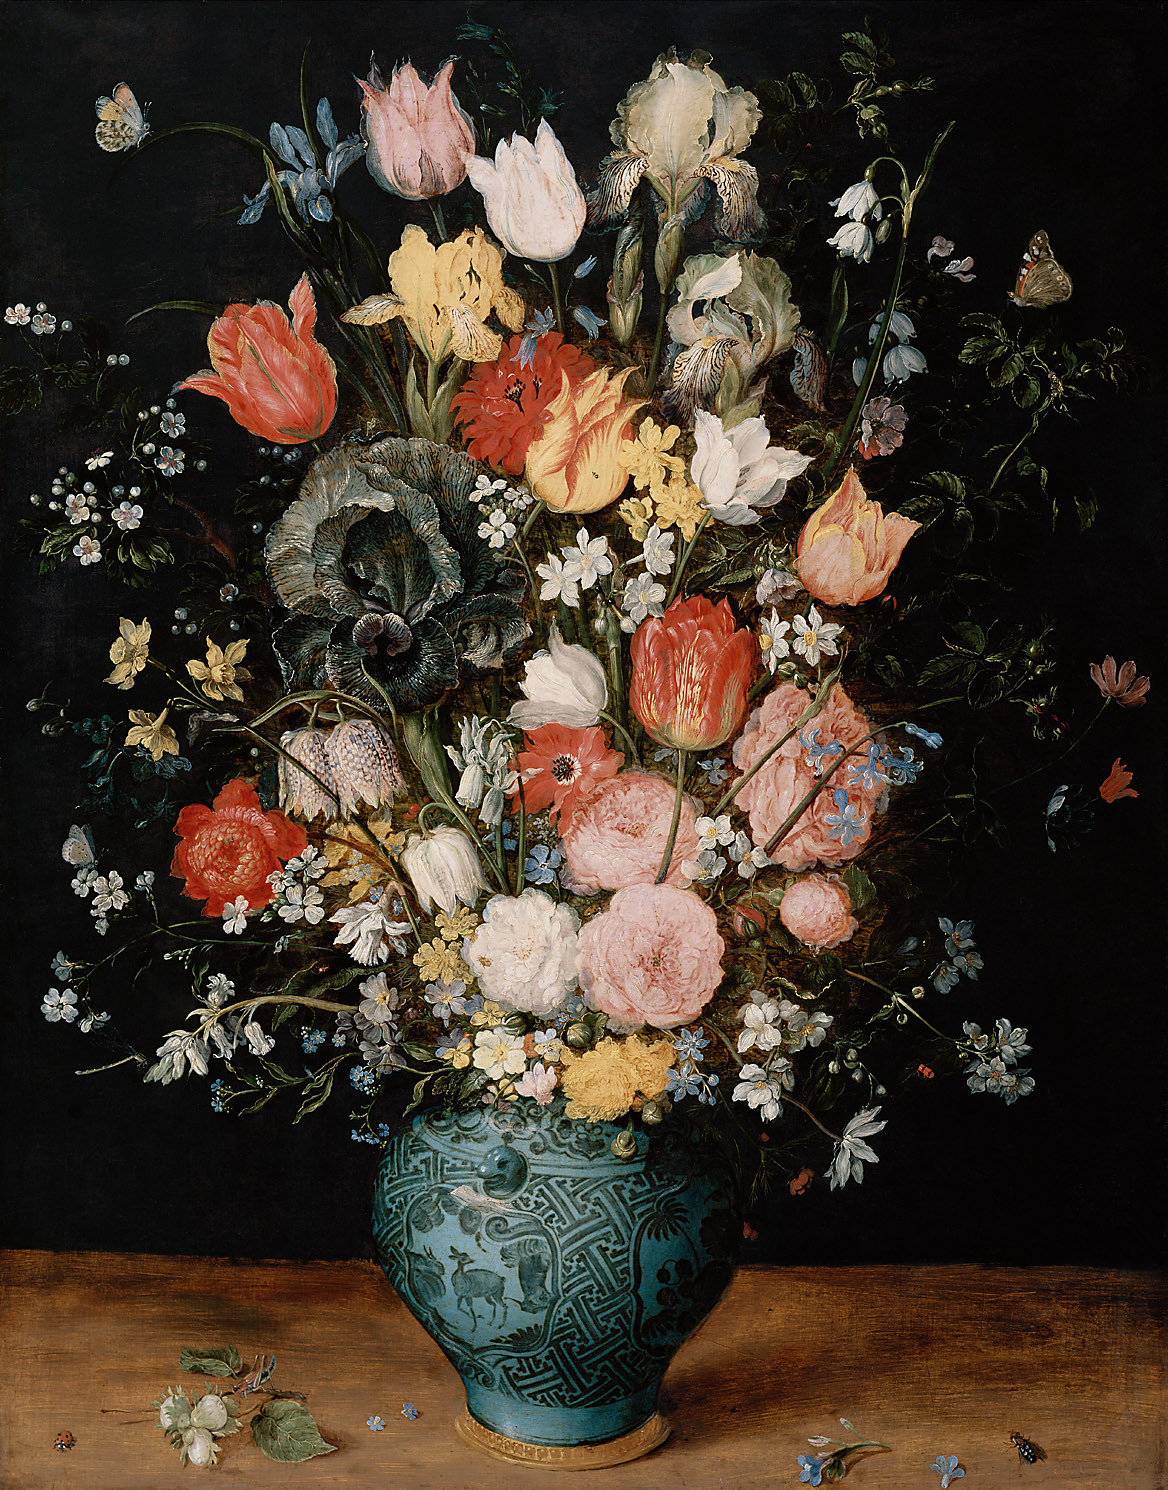 푸른 꽃병에 꽂힌 꽃다발(Bouquet of Flowers in a Blue Vase) by Jan Brueghel the Elder - 1608년경 - 65.8 cm × 51 cm 